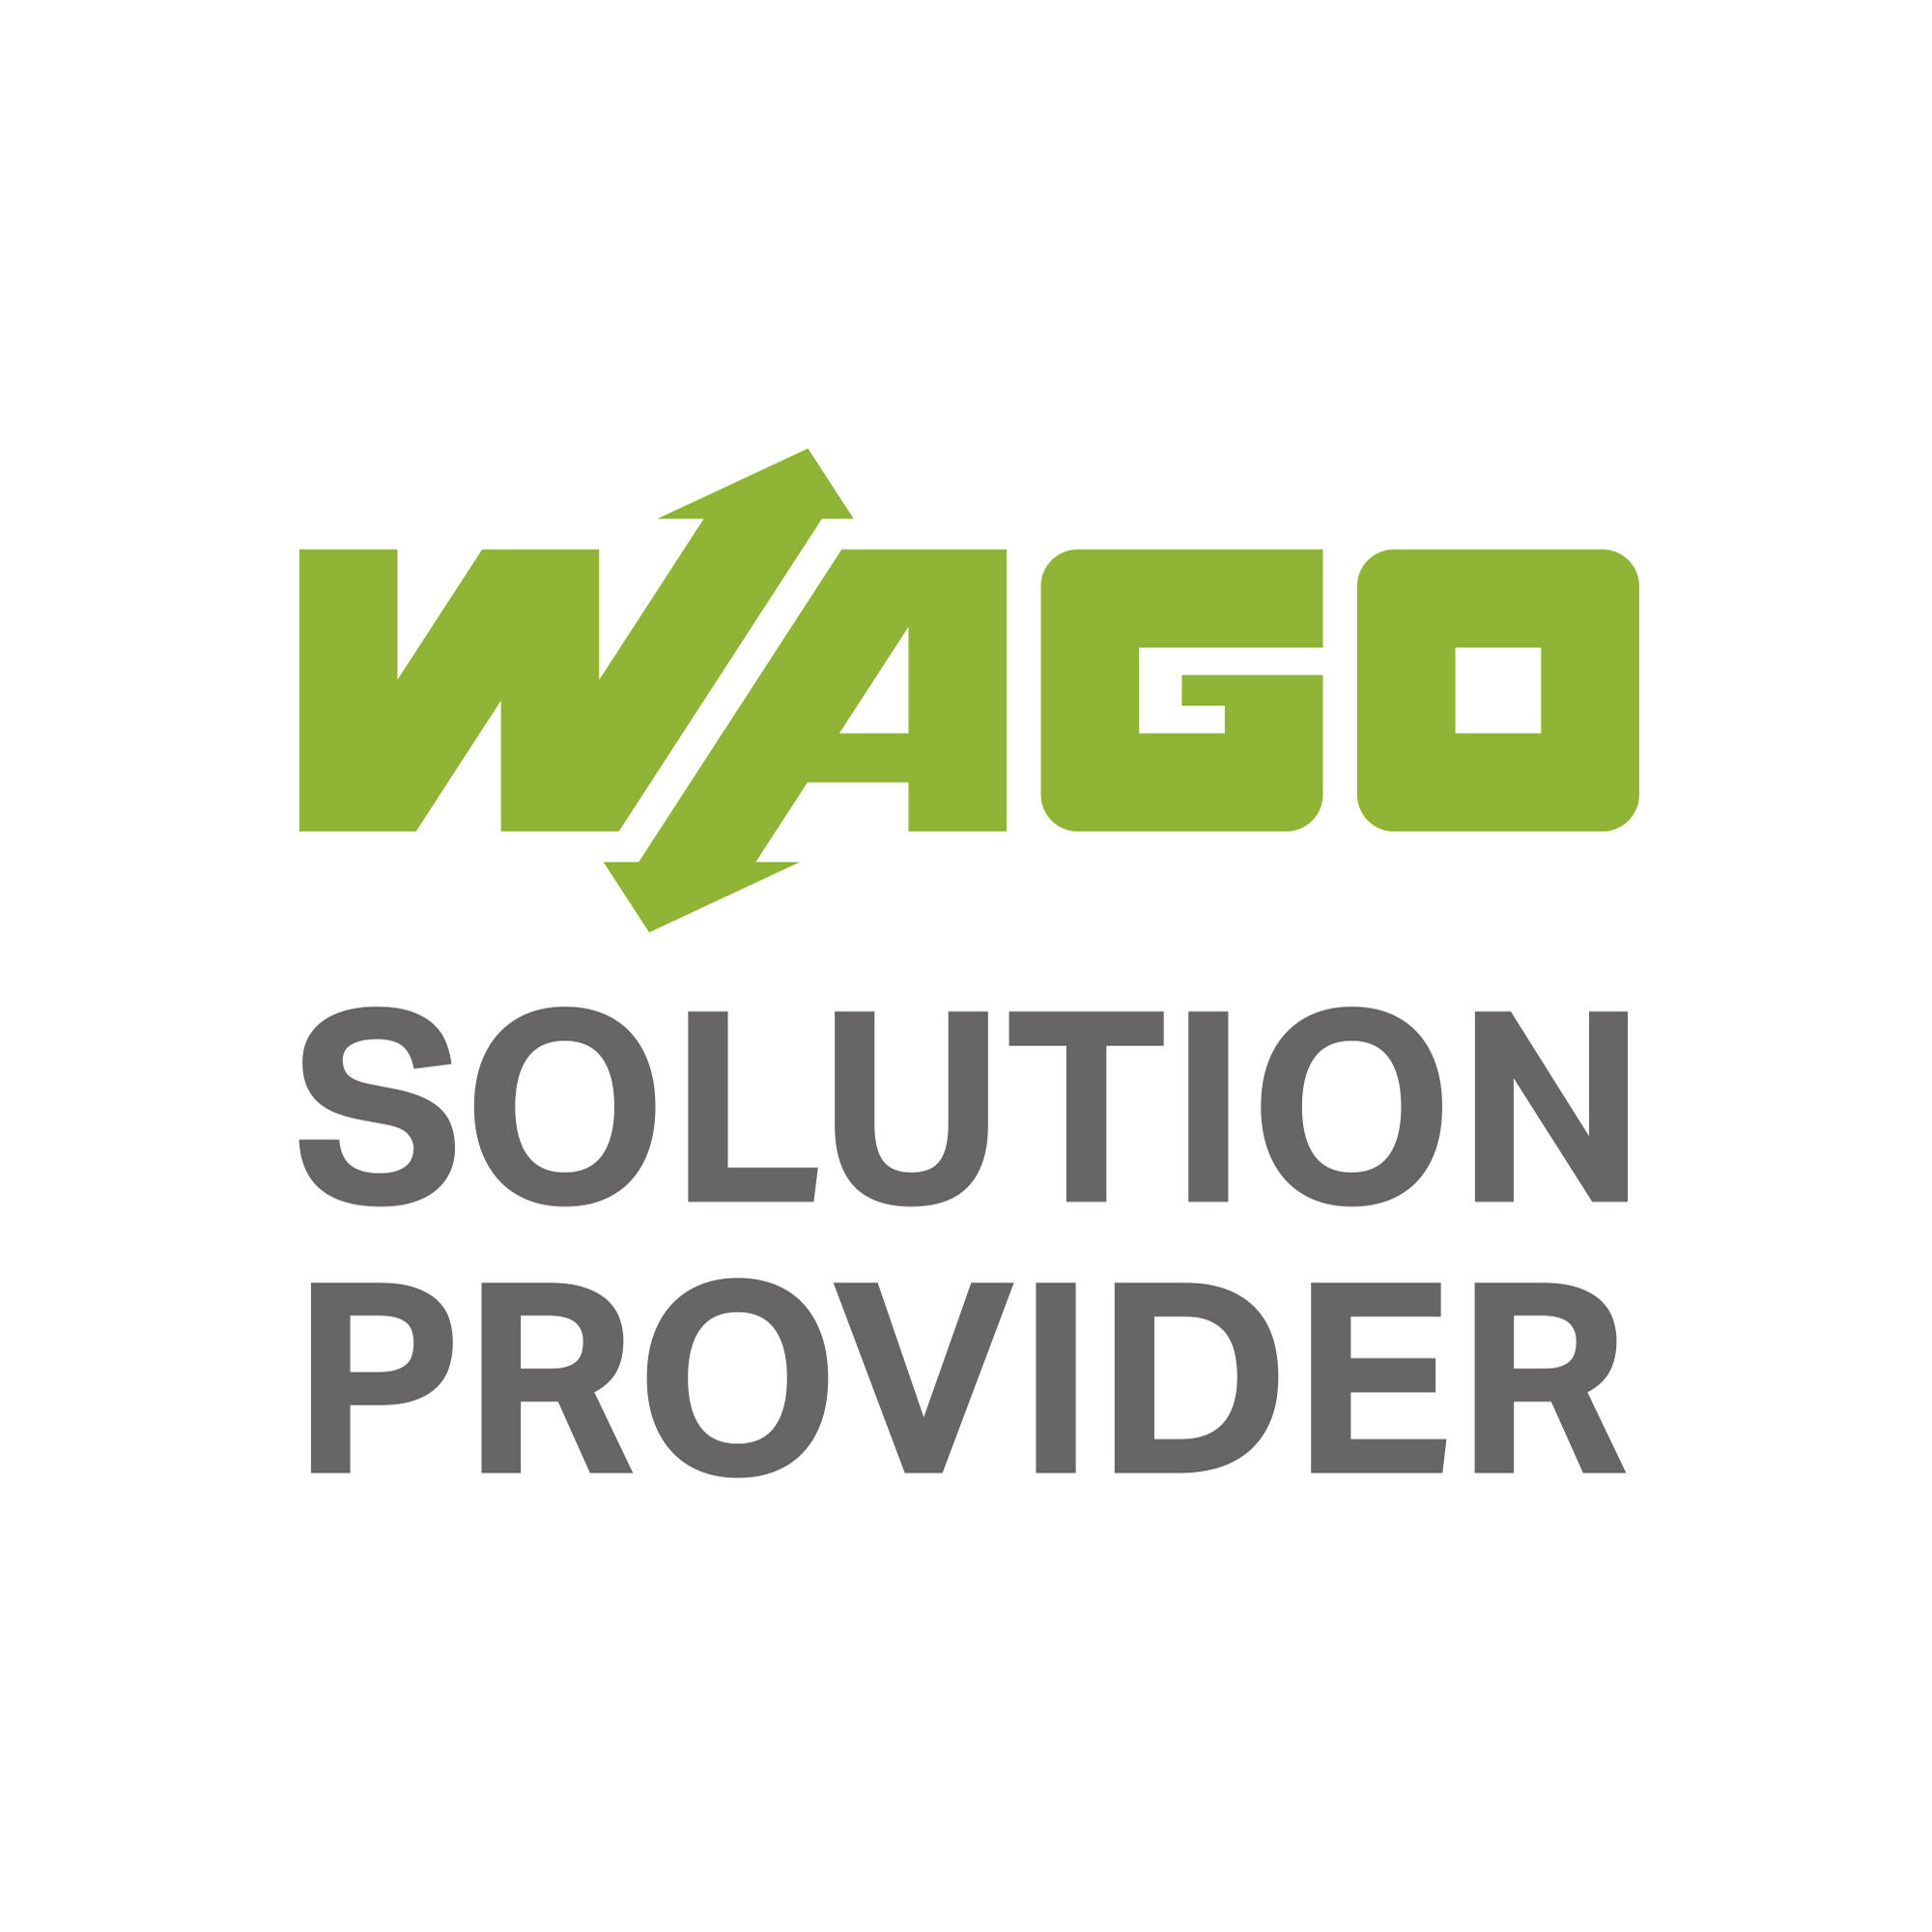 solution_provider_logo_2000x2000.jpg